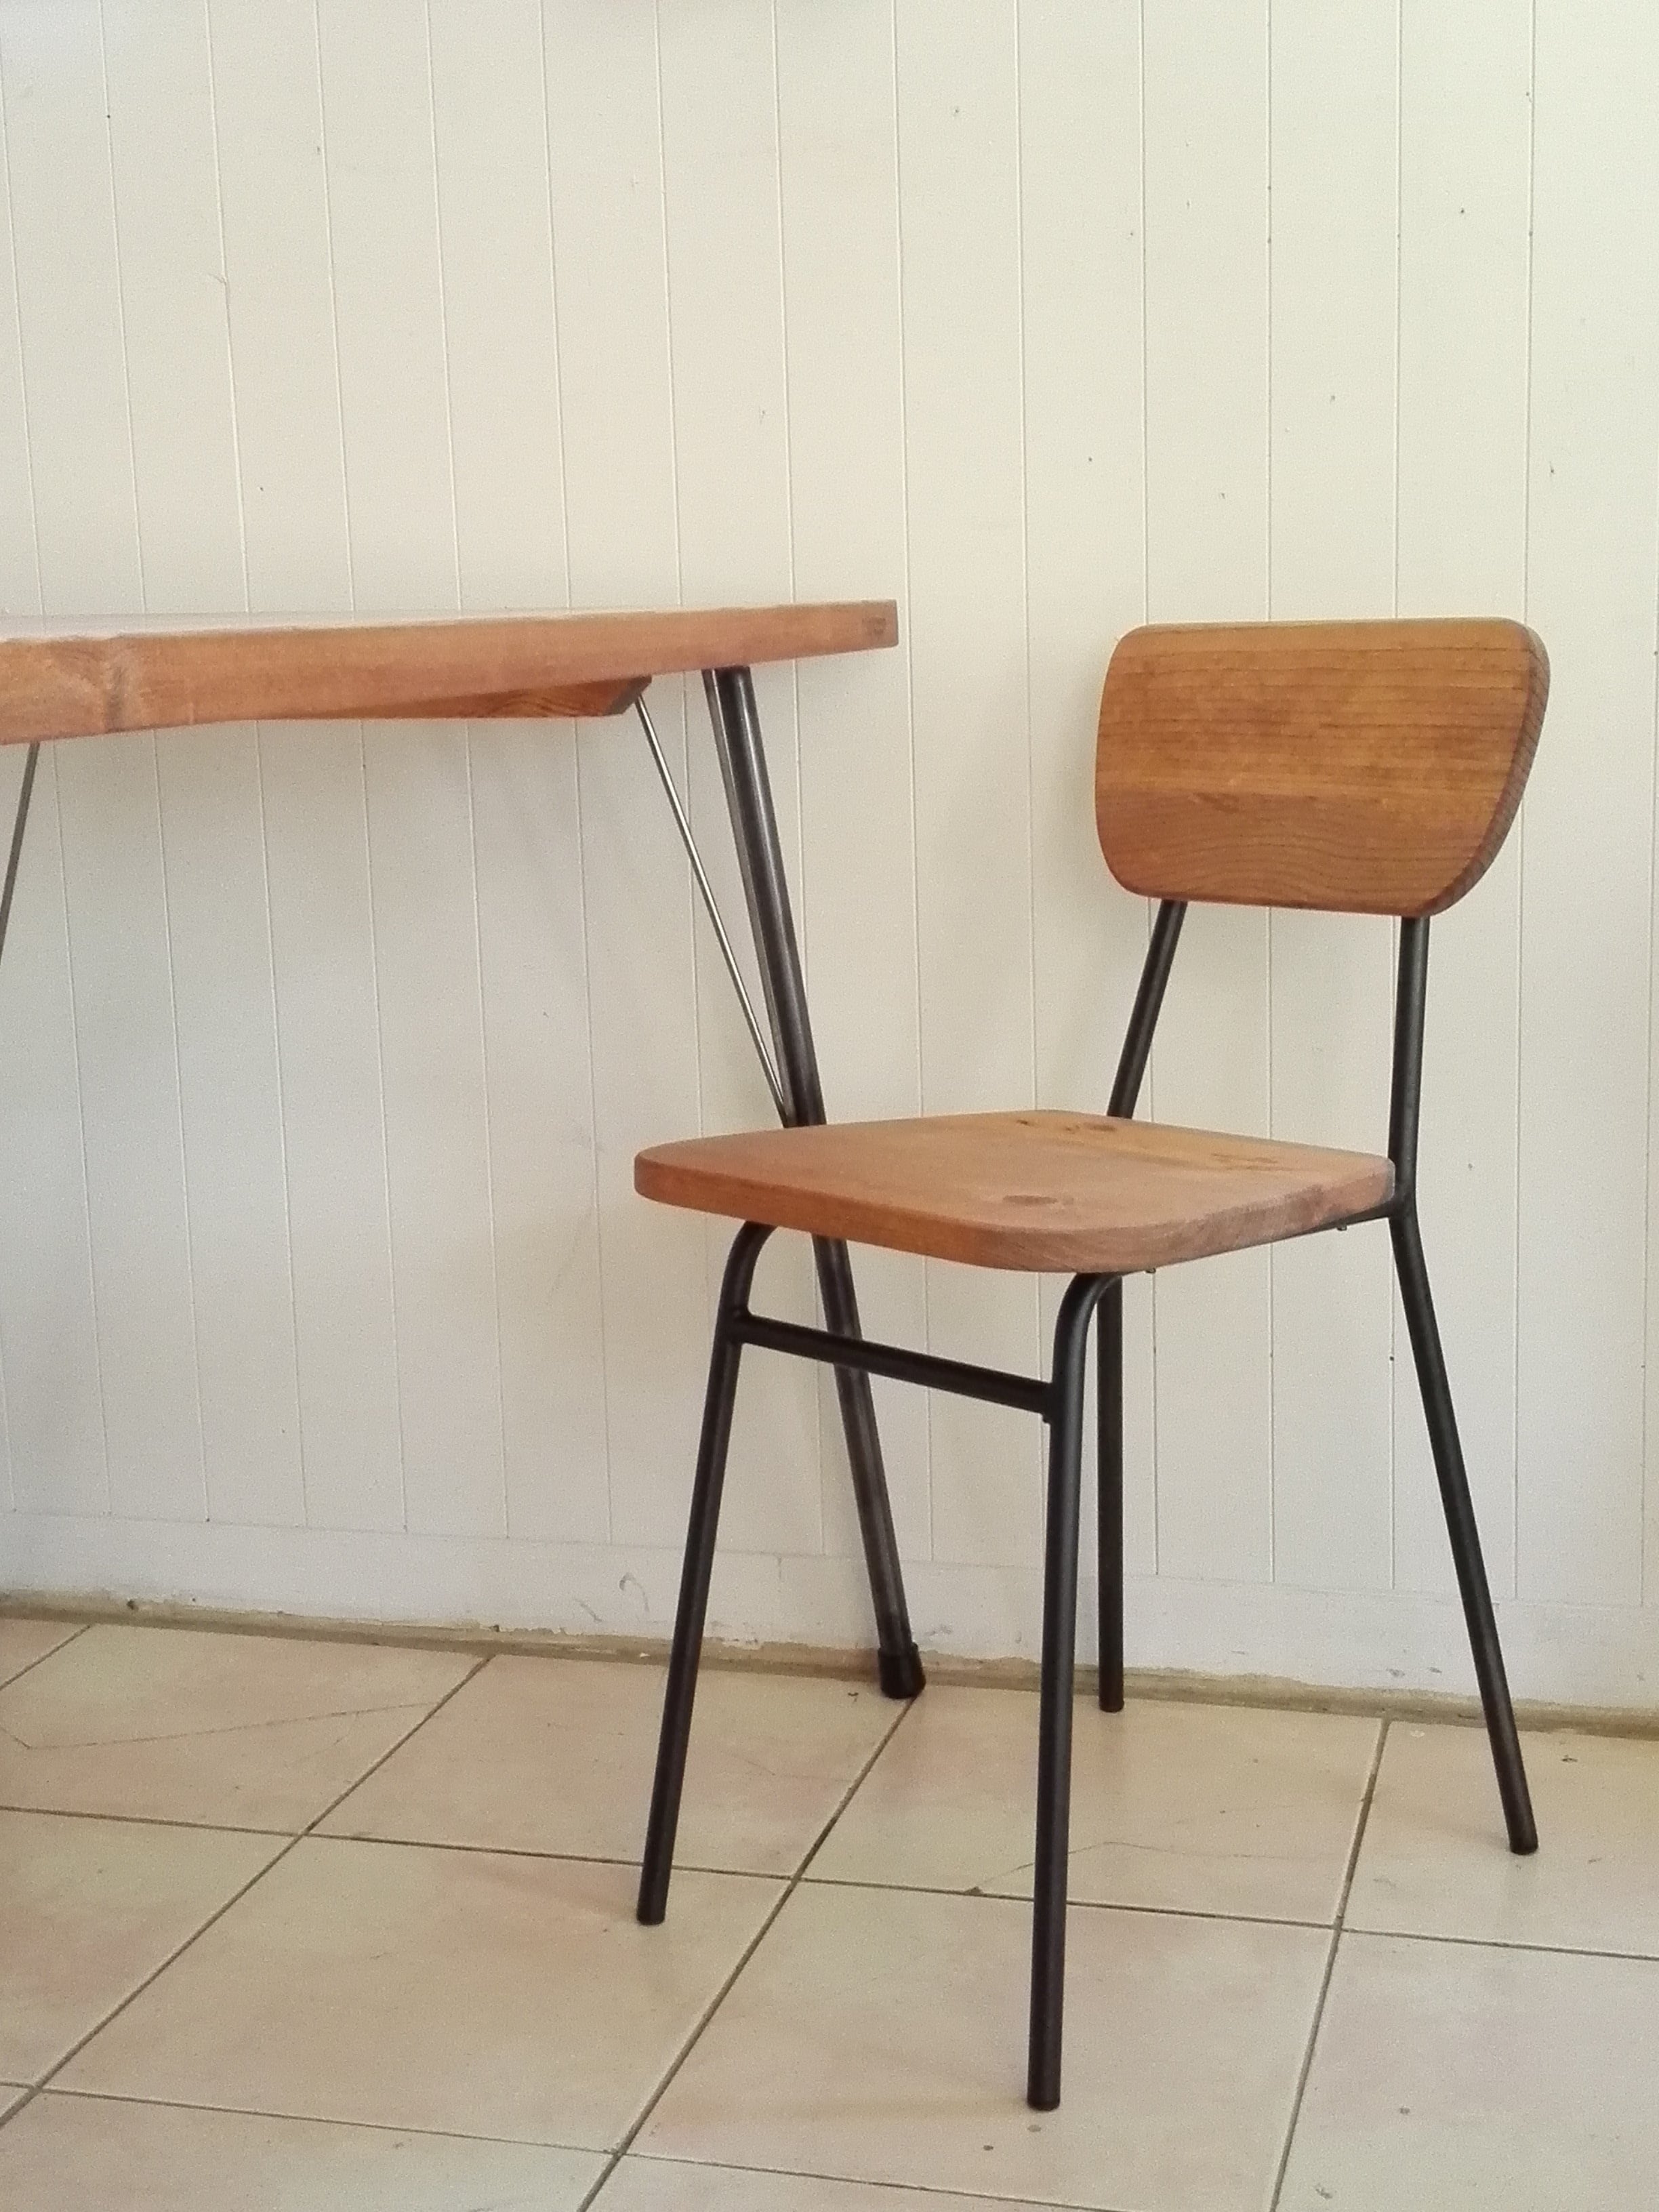 アイアンチェアーS カフェスタイル 小さめ キッズ 学習机 椅子 インダストリアル 無垢 | オーダー家具のKINOKA